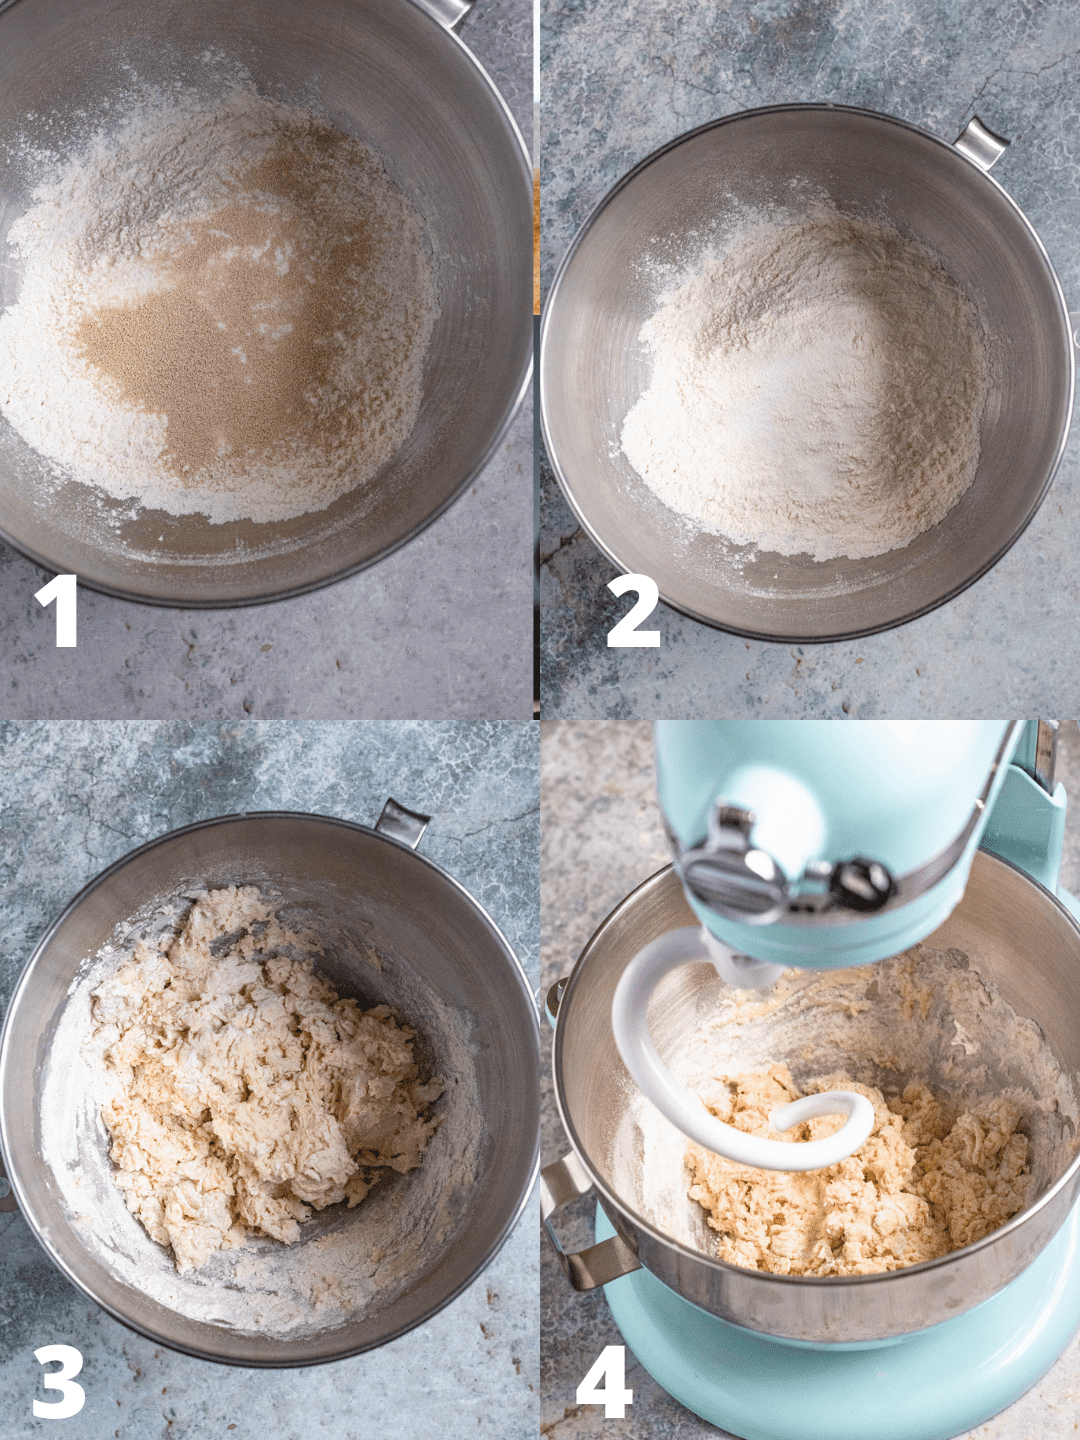 Steps shown to make langos dough. 